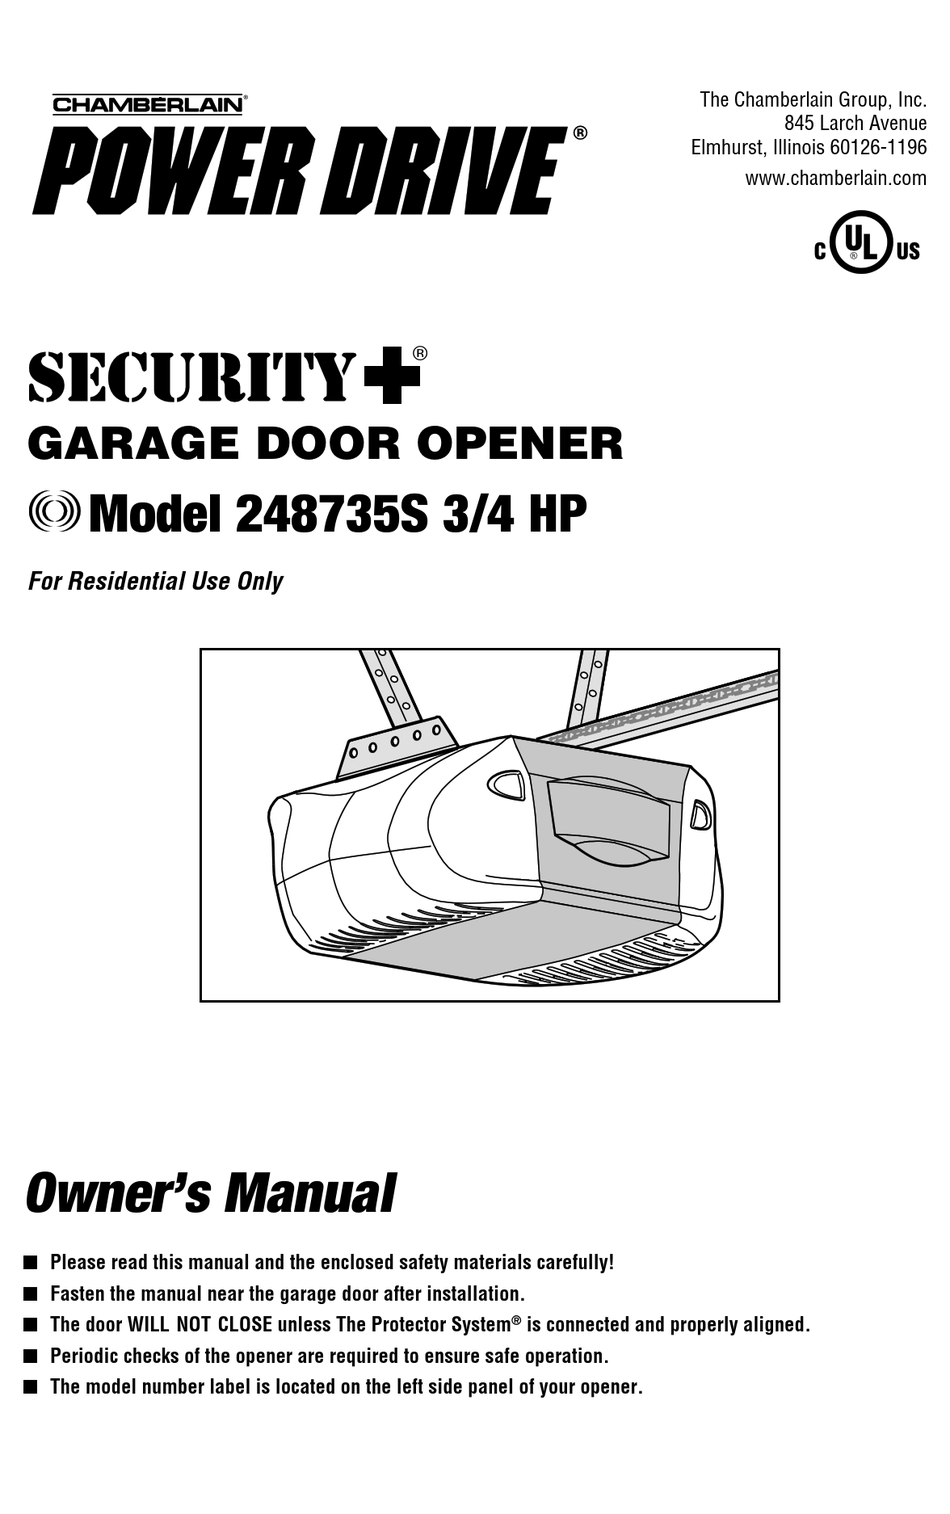 Manual Chamberlain Garage Door Opener - Garage and Bedroom Image